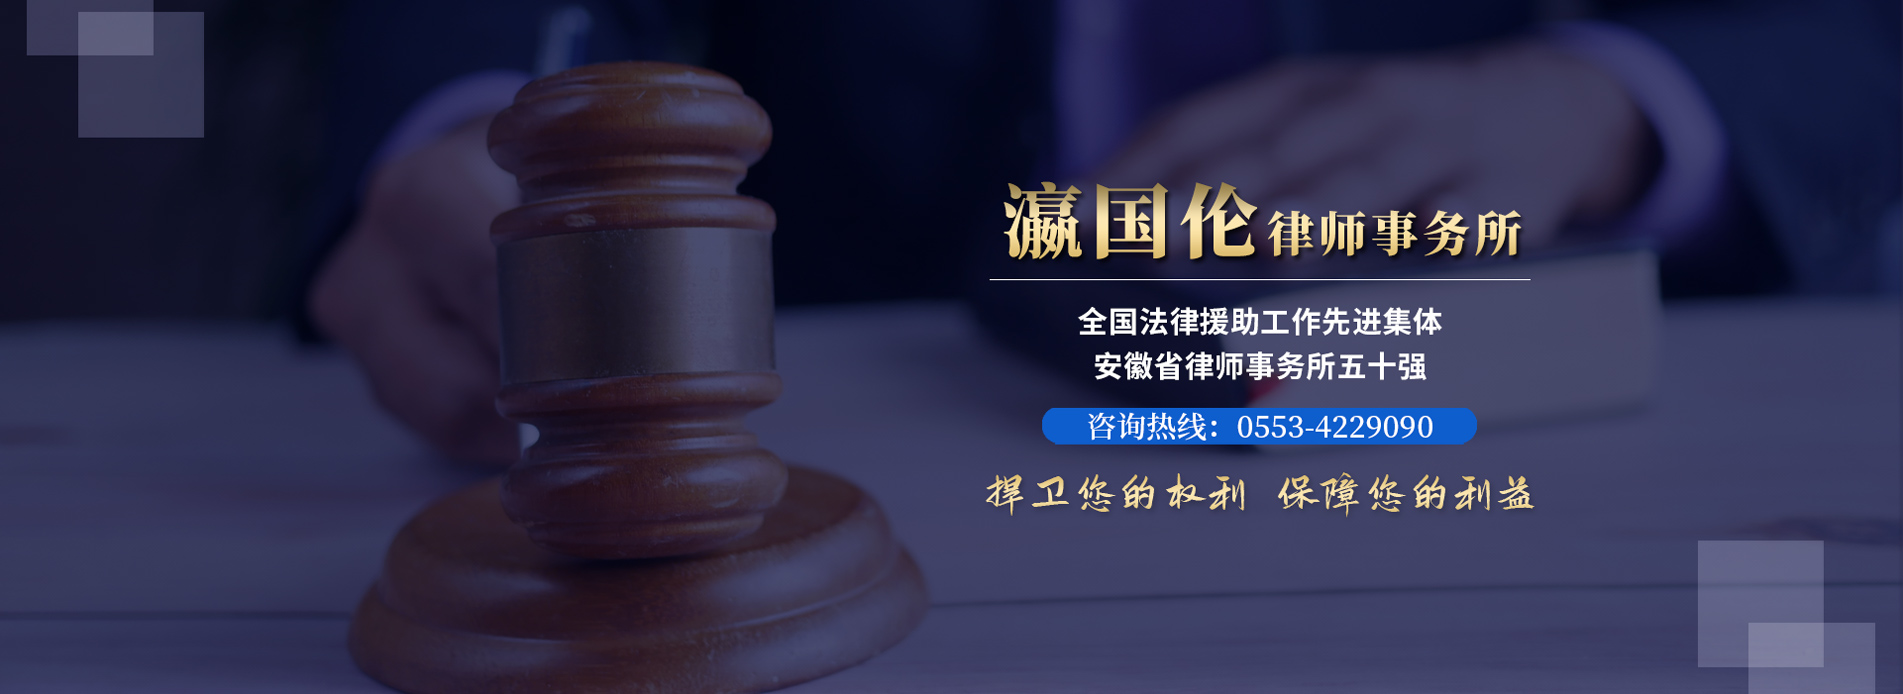 芜湖法律咨询